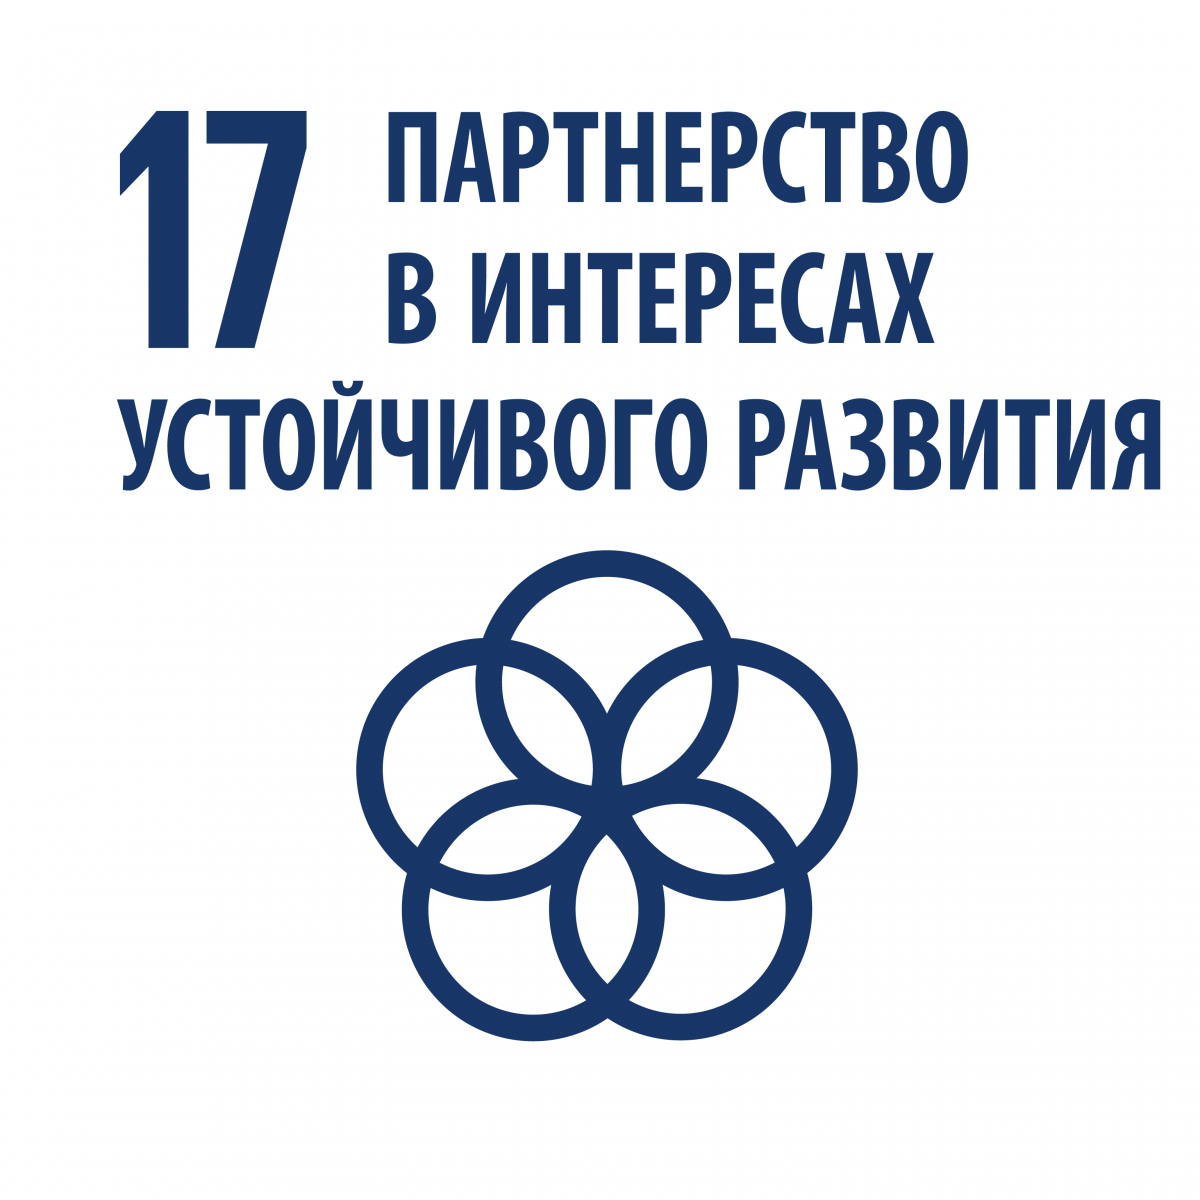 17 устойчивых целей оон. 17 Целей устойчивого развития ООН. Партнерство в интересах устойчивого развития цель 17. Партнерство а интересах устойчивого развития ООН. Цели устойчивого развития ООН.